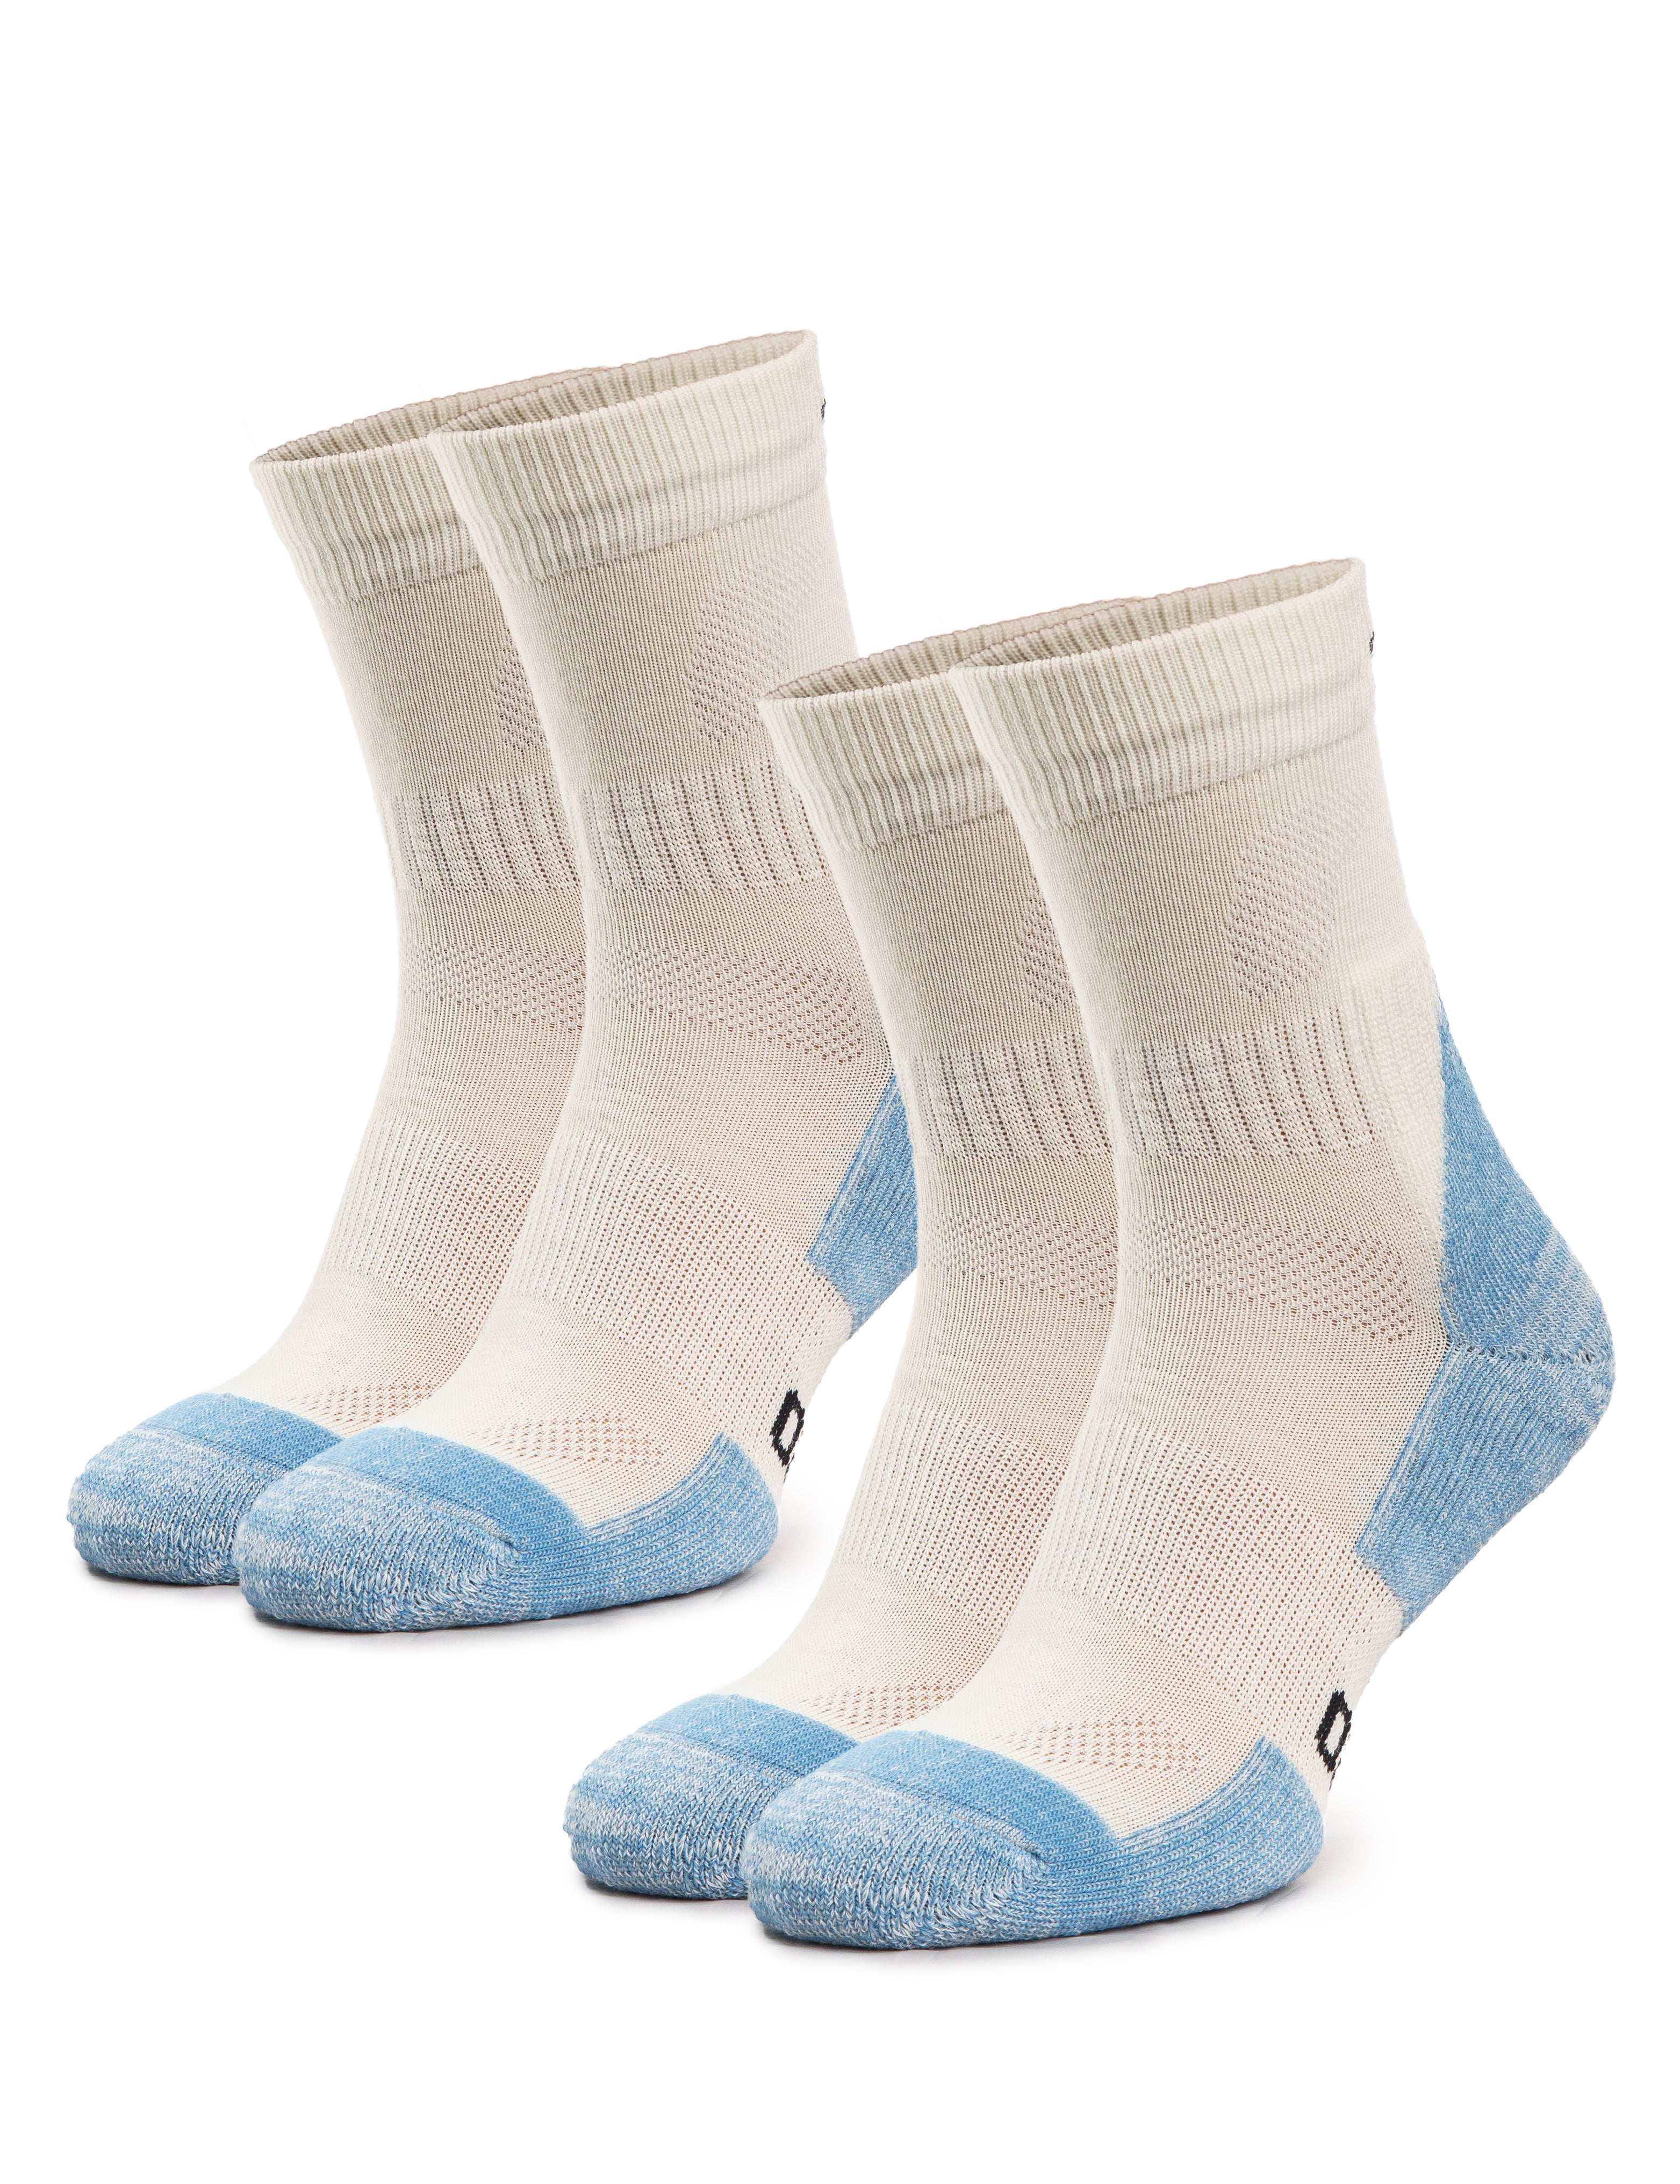 Merino Wool Hiking Socks, Pack of 2, Thermal socks